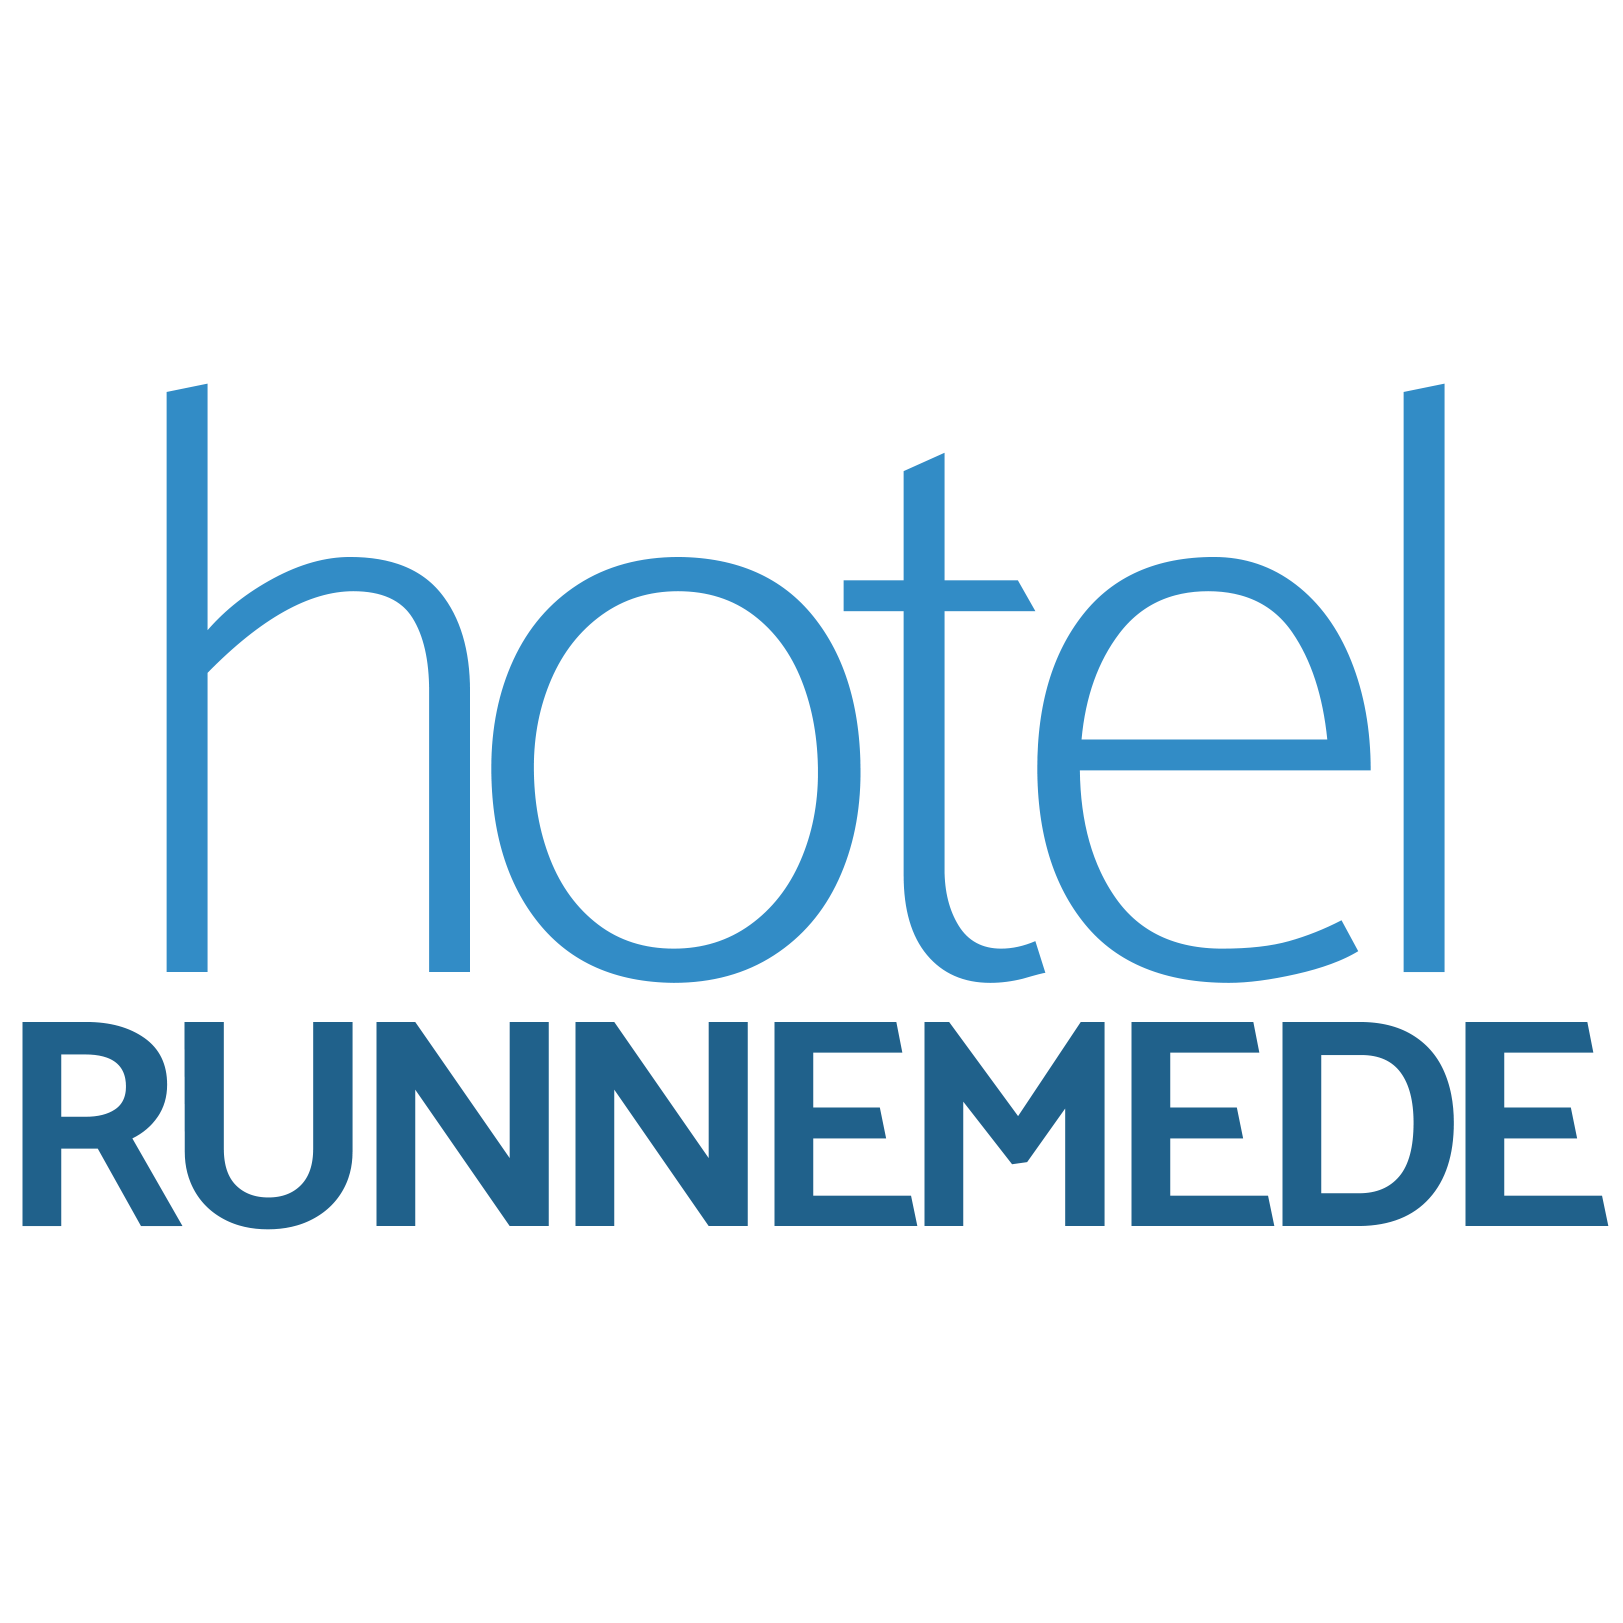 Hotel Runnemede - Philadelphia Logo